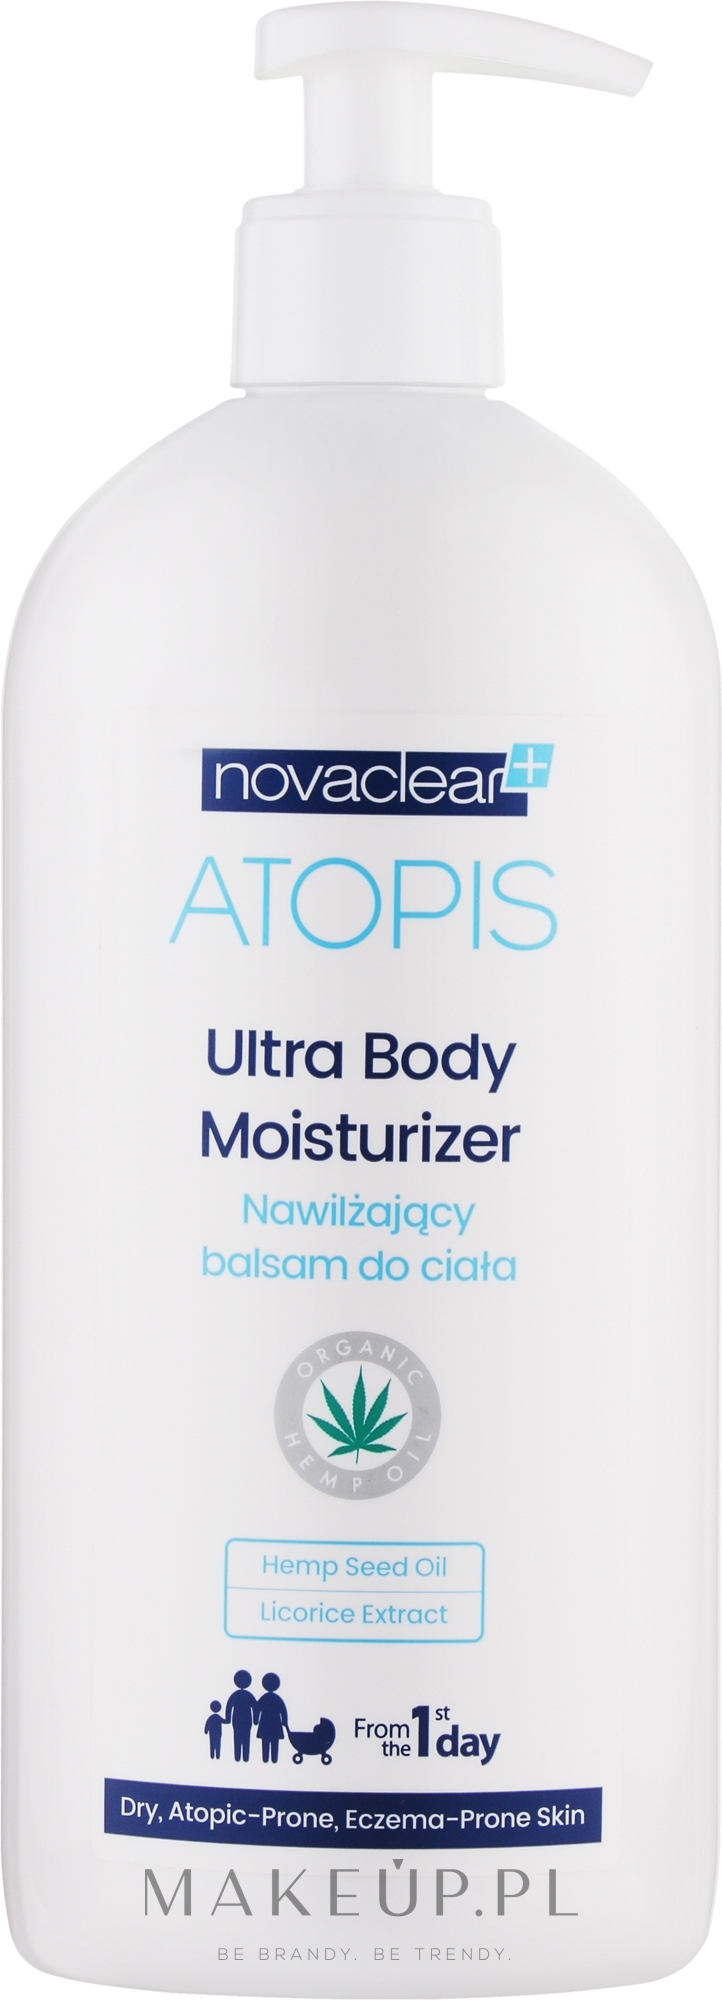 Nawilżający balsam do ciała - Novaclear Atopis Ultra Body Moisturizer — Zdjęcie 500 ml